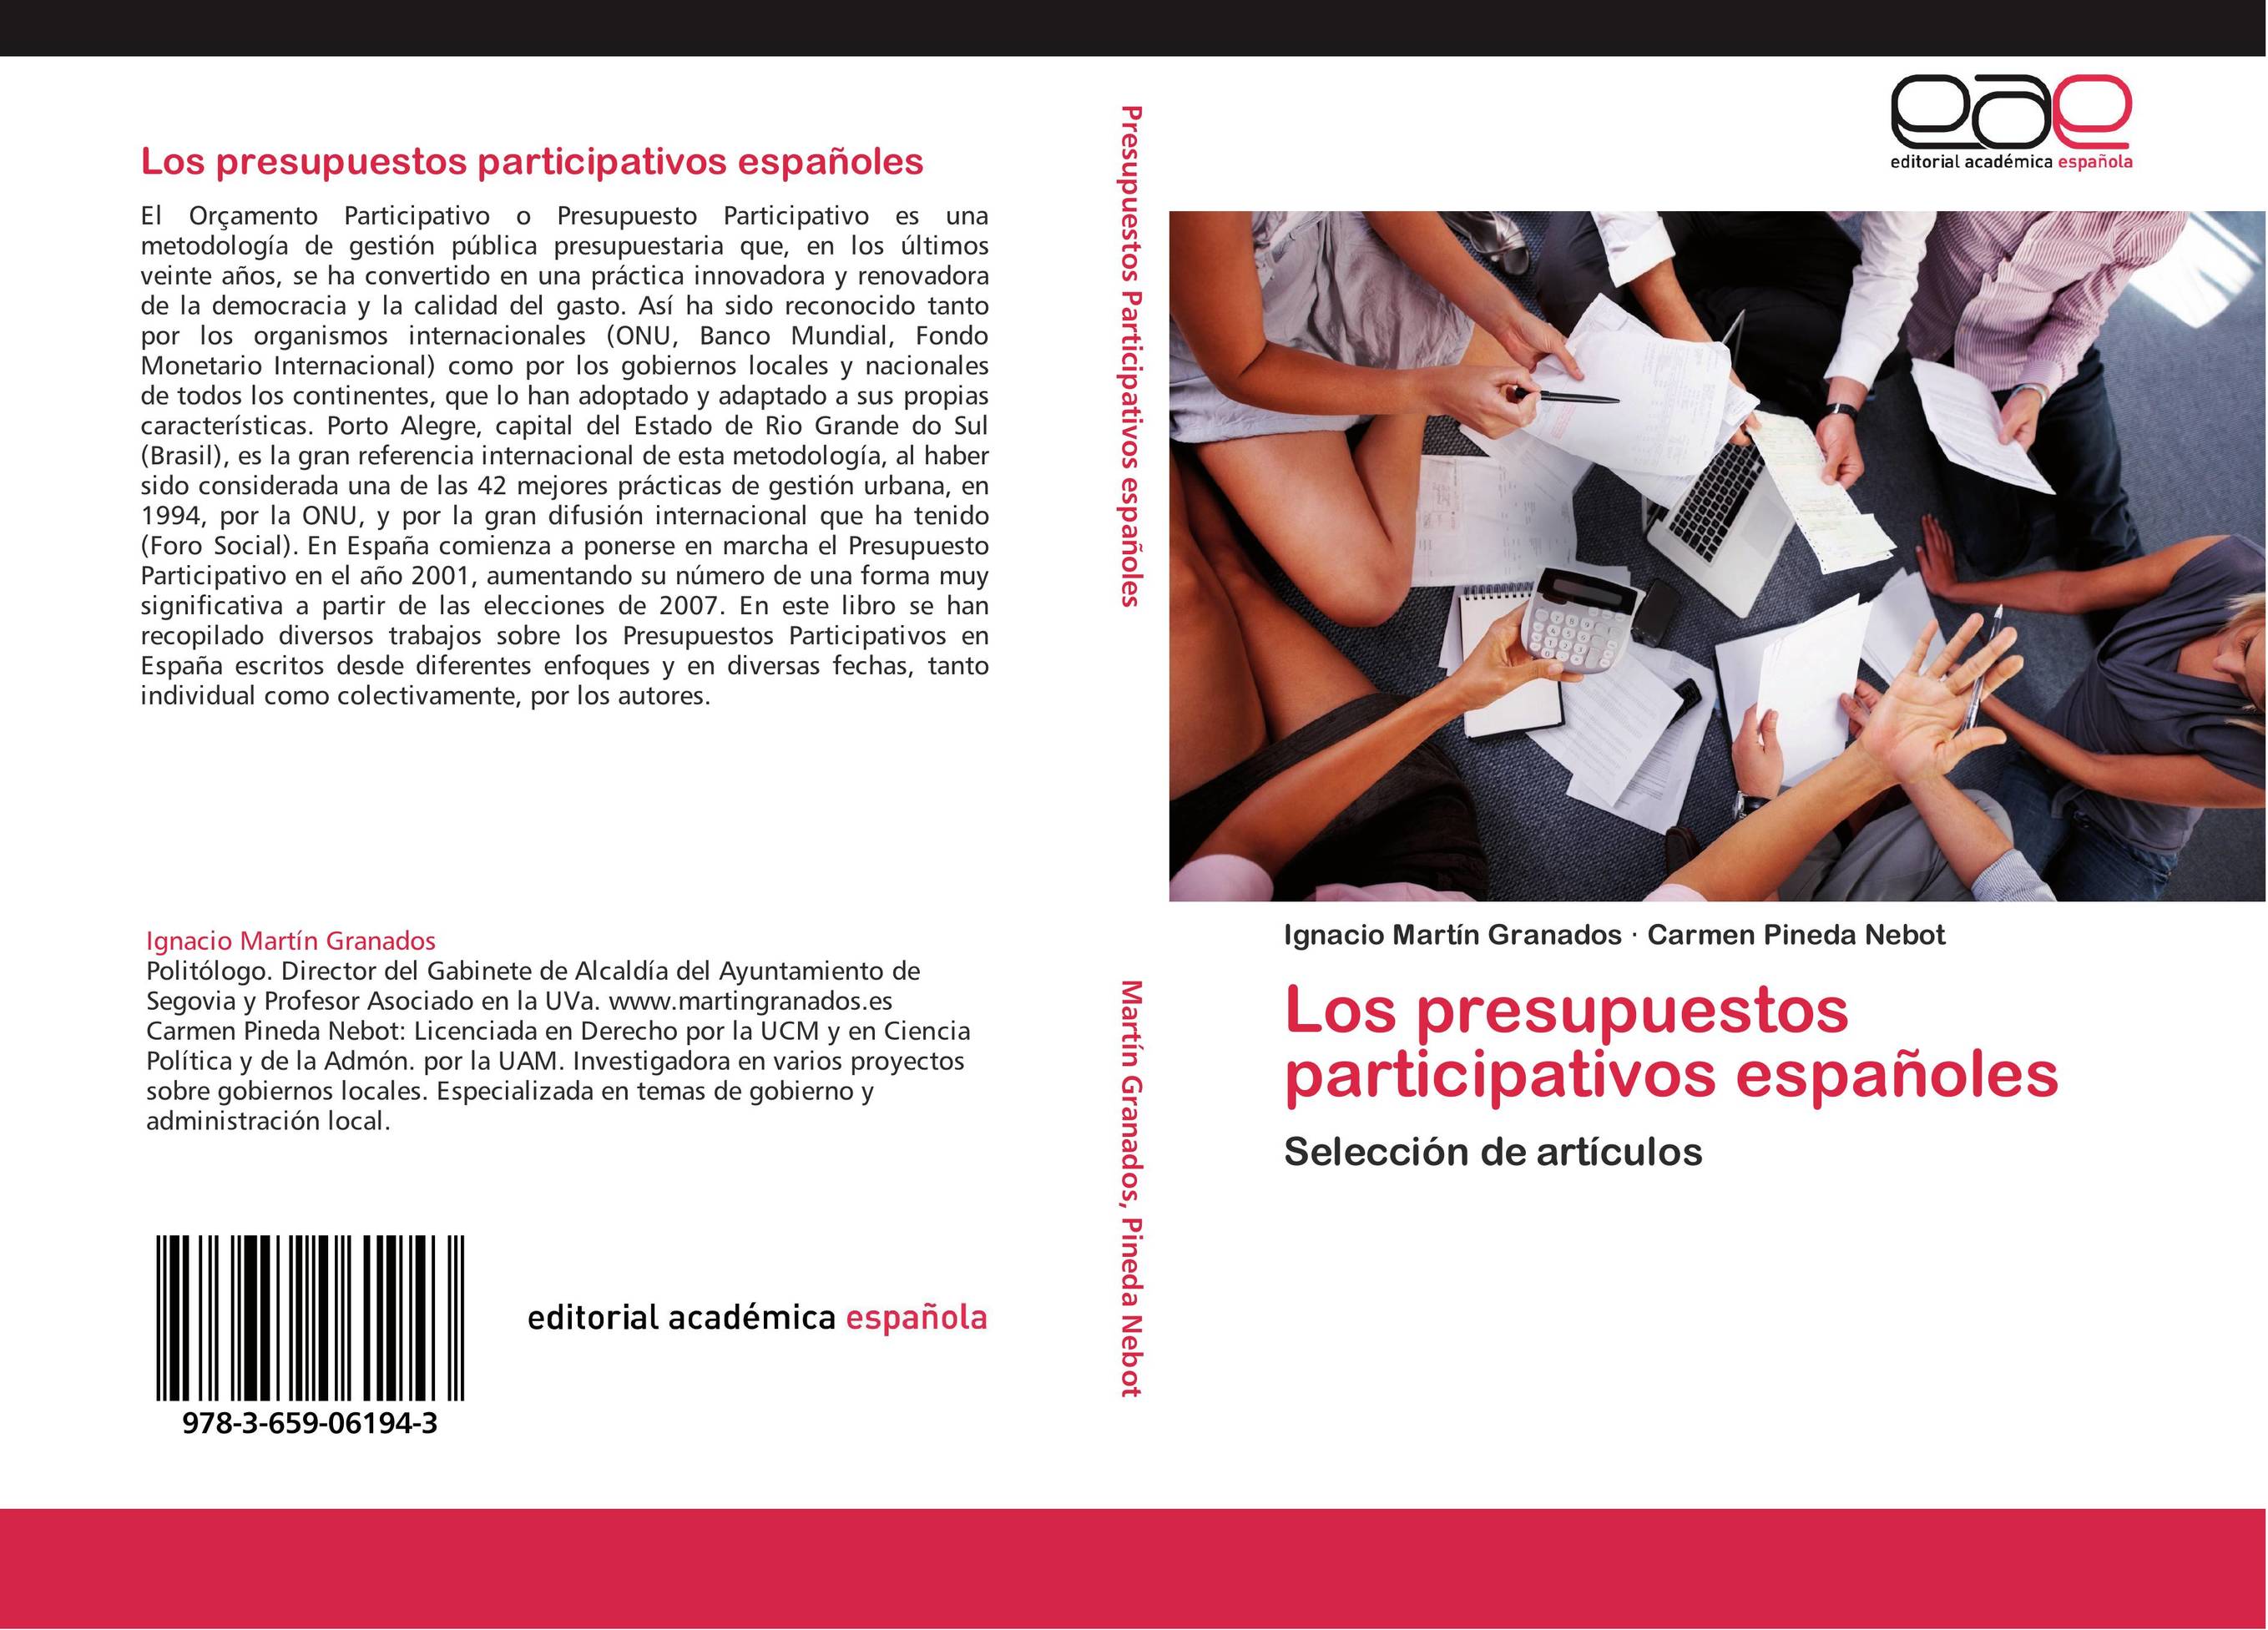 Los presupuestos participativos españoles